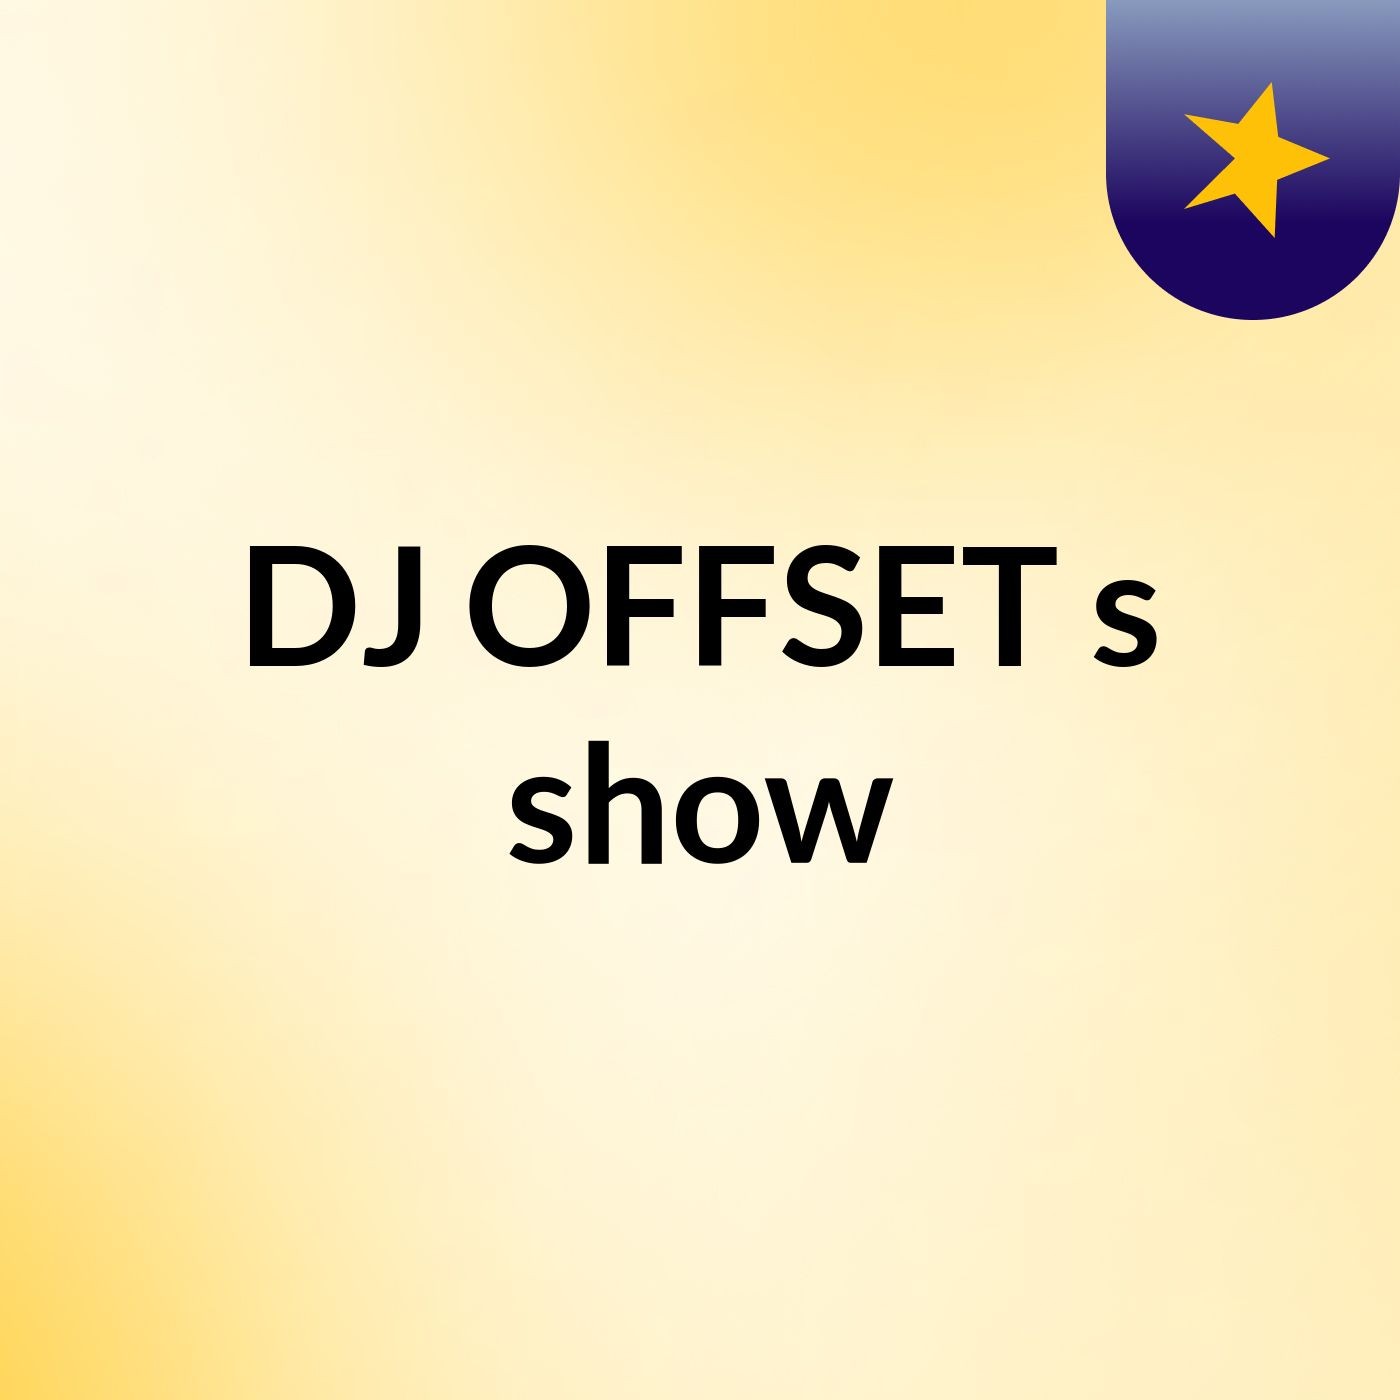 DJ OFFSET's show